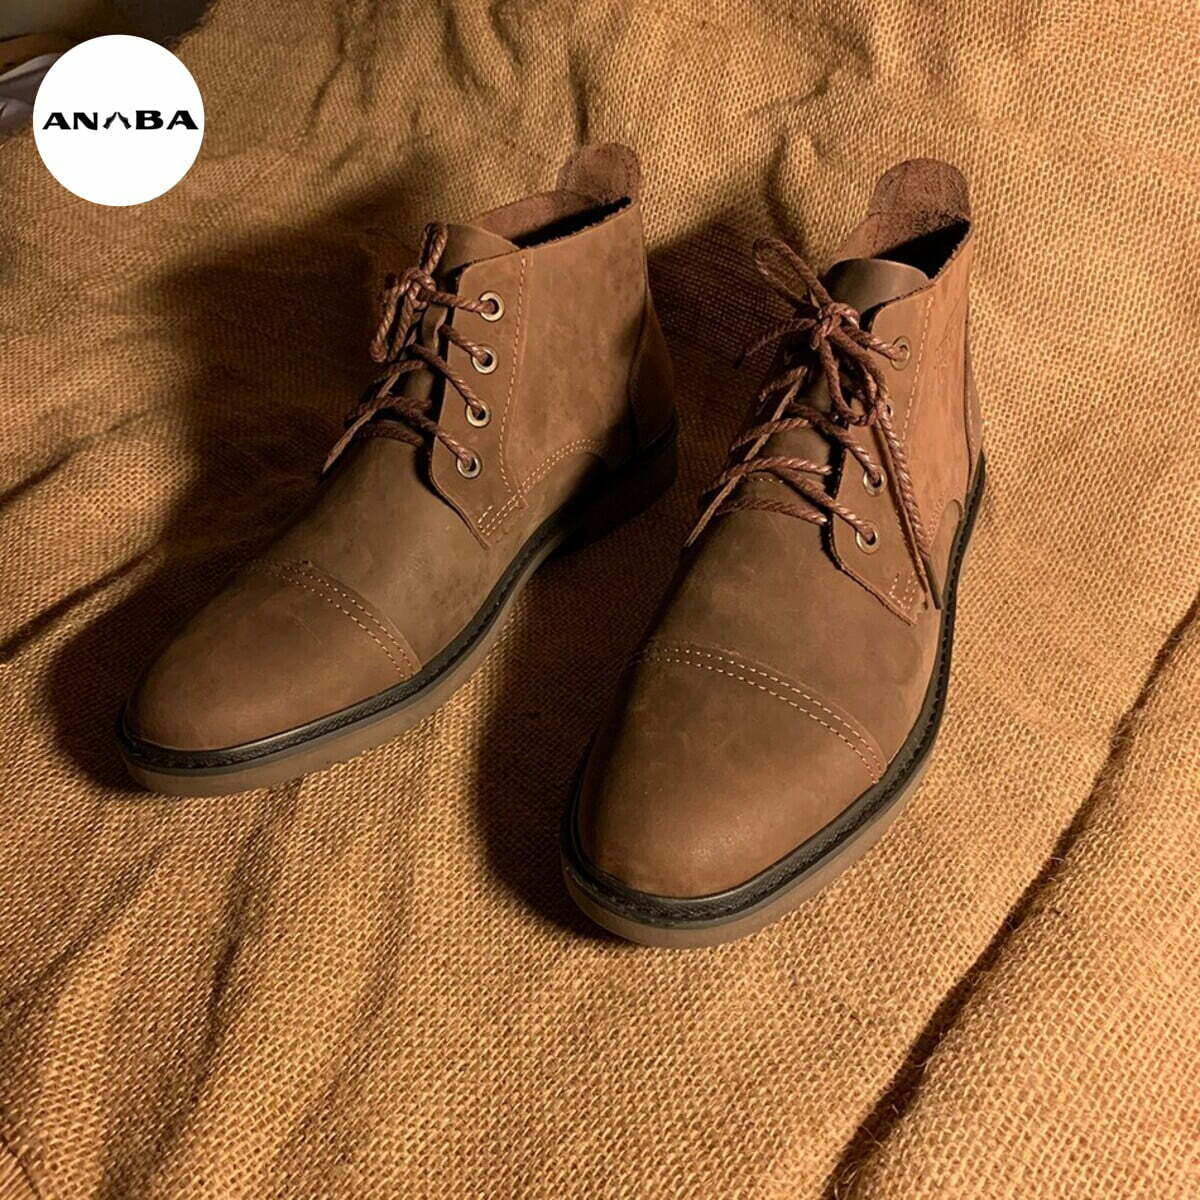 Giày Desert là một loại giày cổ điển có kiểu dáng đơn giản và thường được làm bằng da.